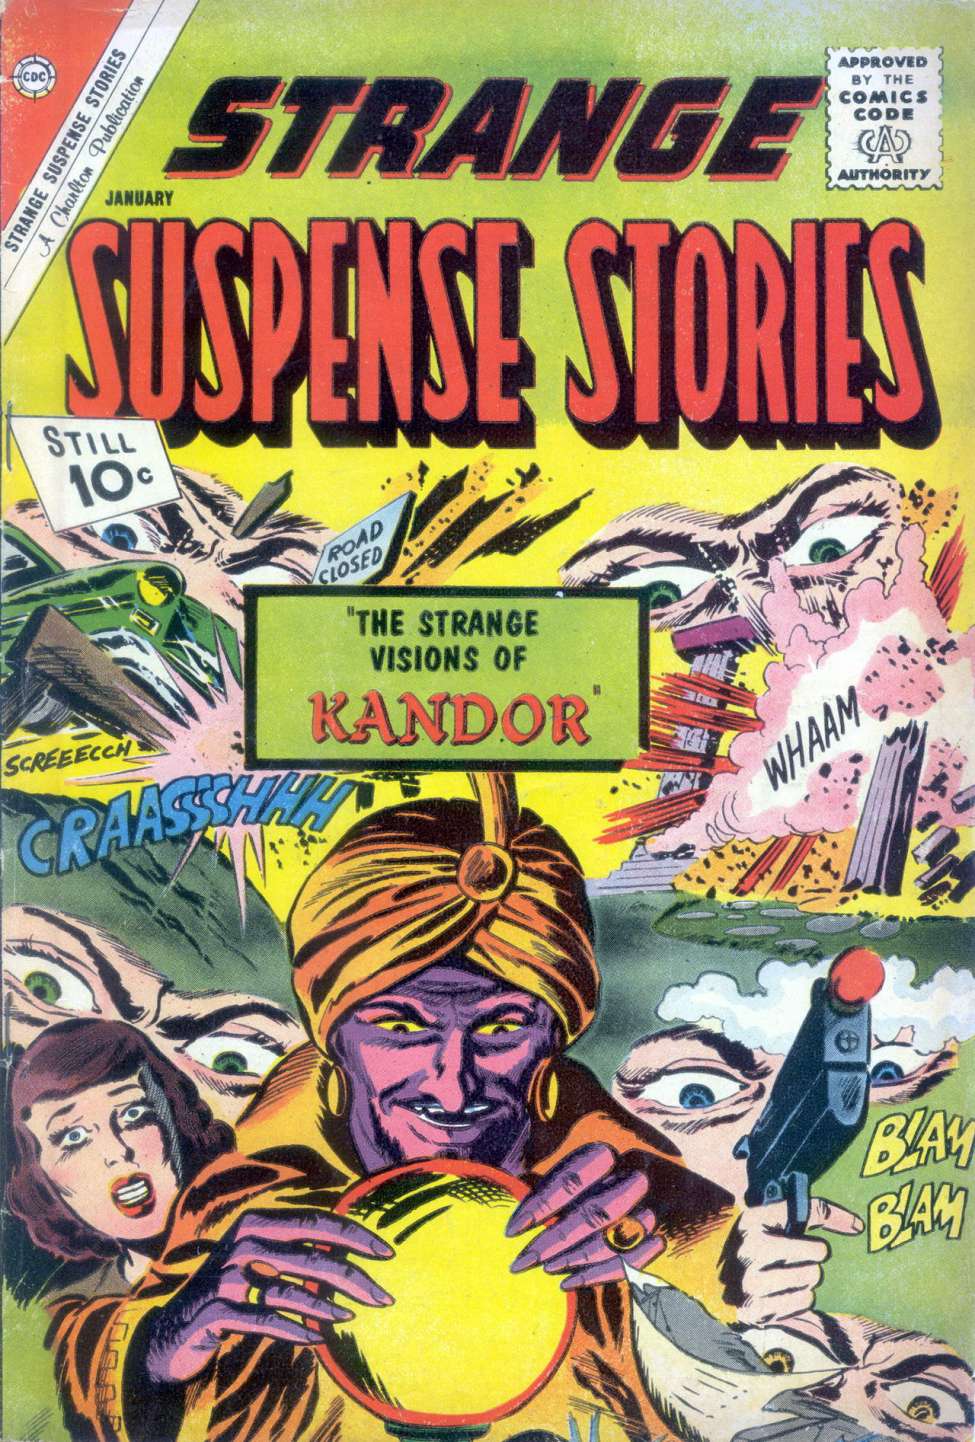 Book Cover For Strange Suspense Stories 57